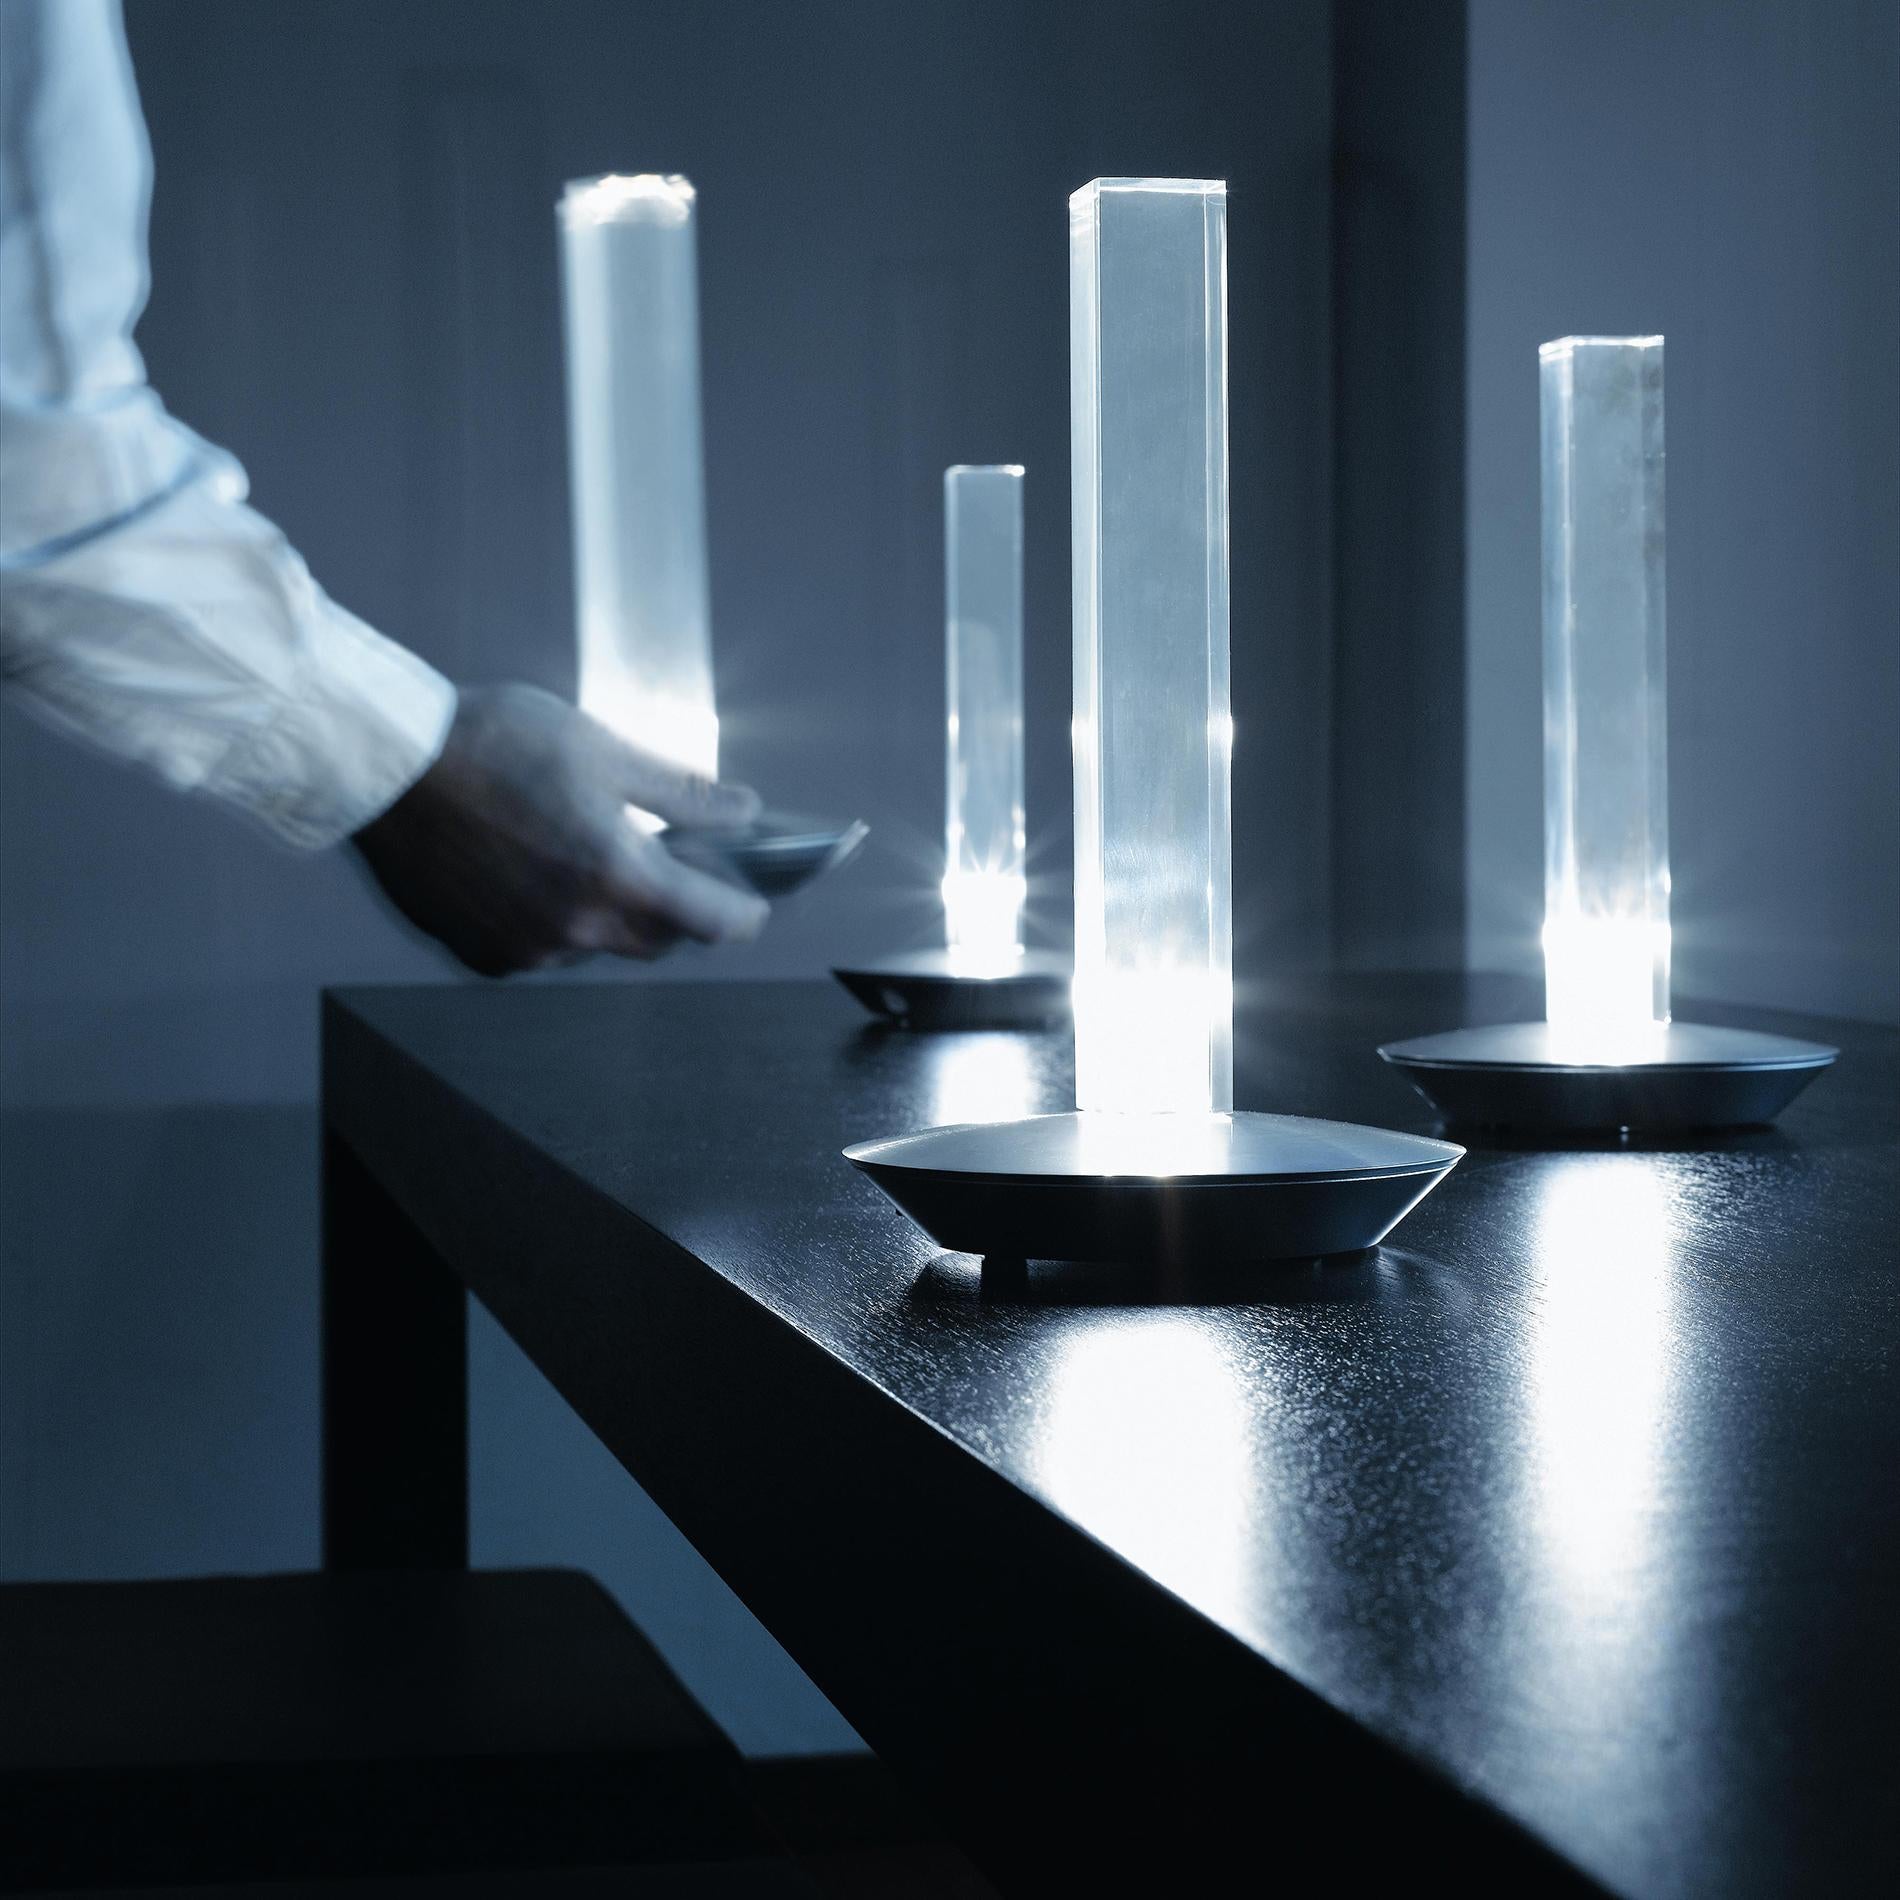 Lampe de table 'Cand-led' créée par Marta Laudani & Marco Romanel en 2005.
Lampe de table à lumière diffuse, avec LED. Abat-jour en PMMA transparent. Couvercle de base en aluminium anodisé satiné. Avec chargeur de batterie et filtres en plastique